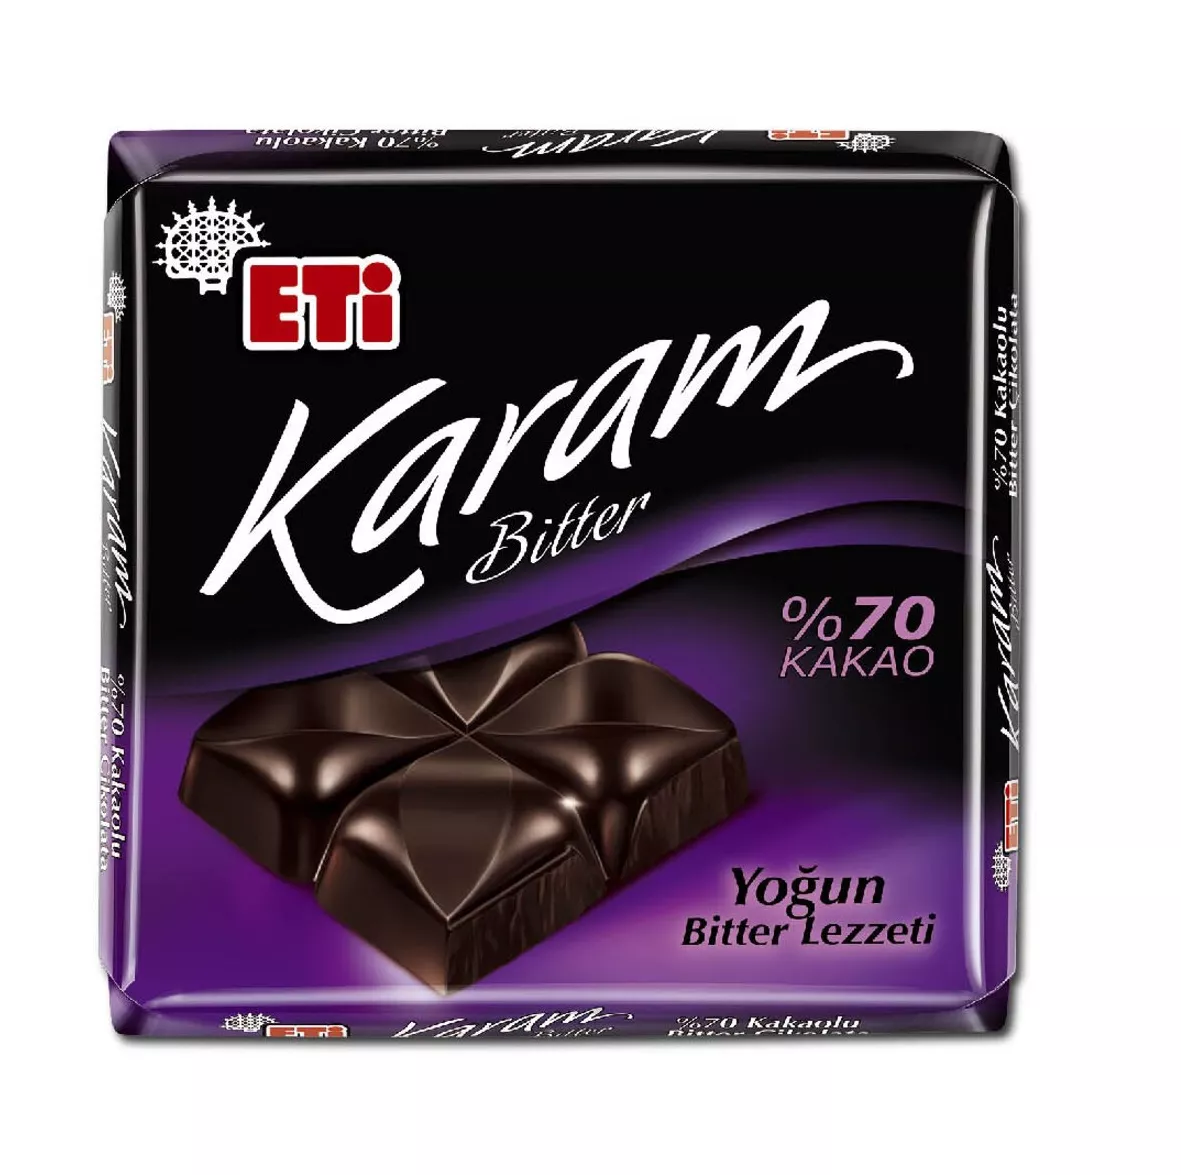 Eti Karam %70 Bitter Kare Çikolata 60 Gr 